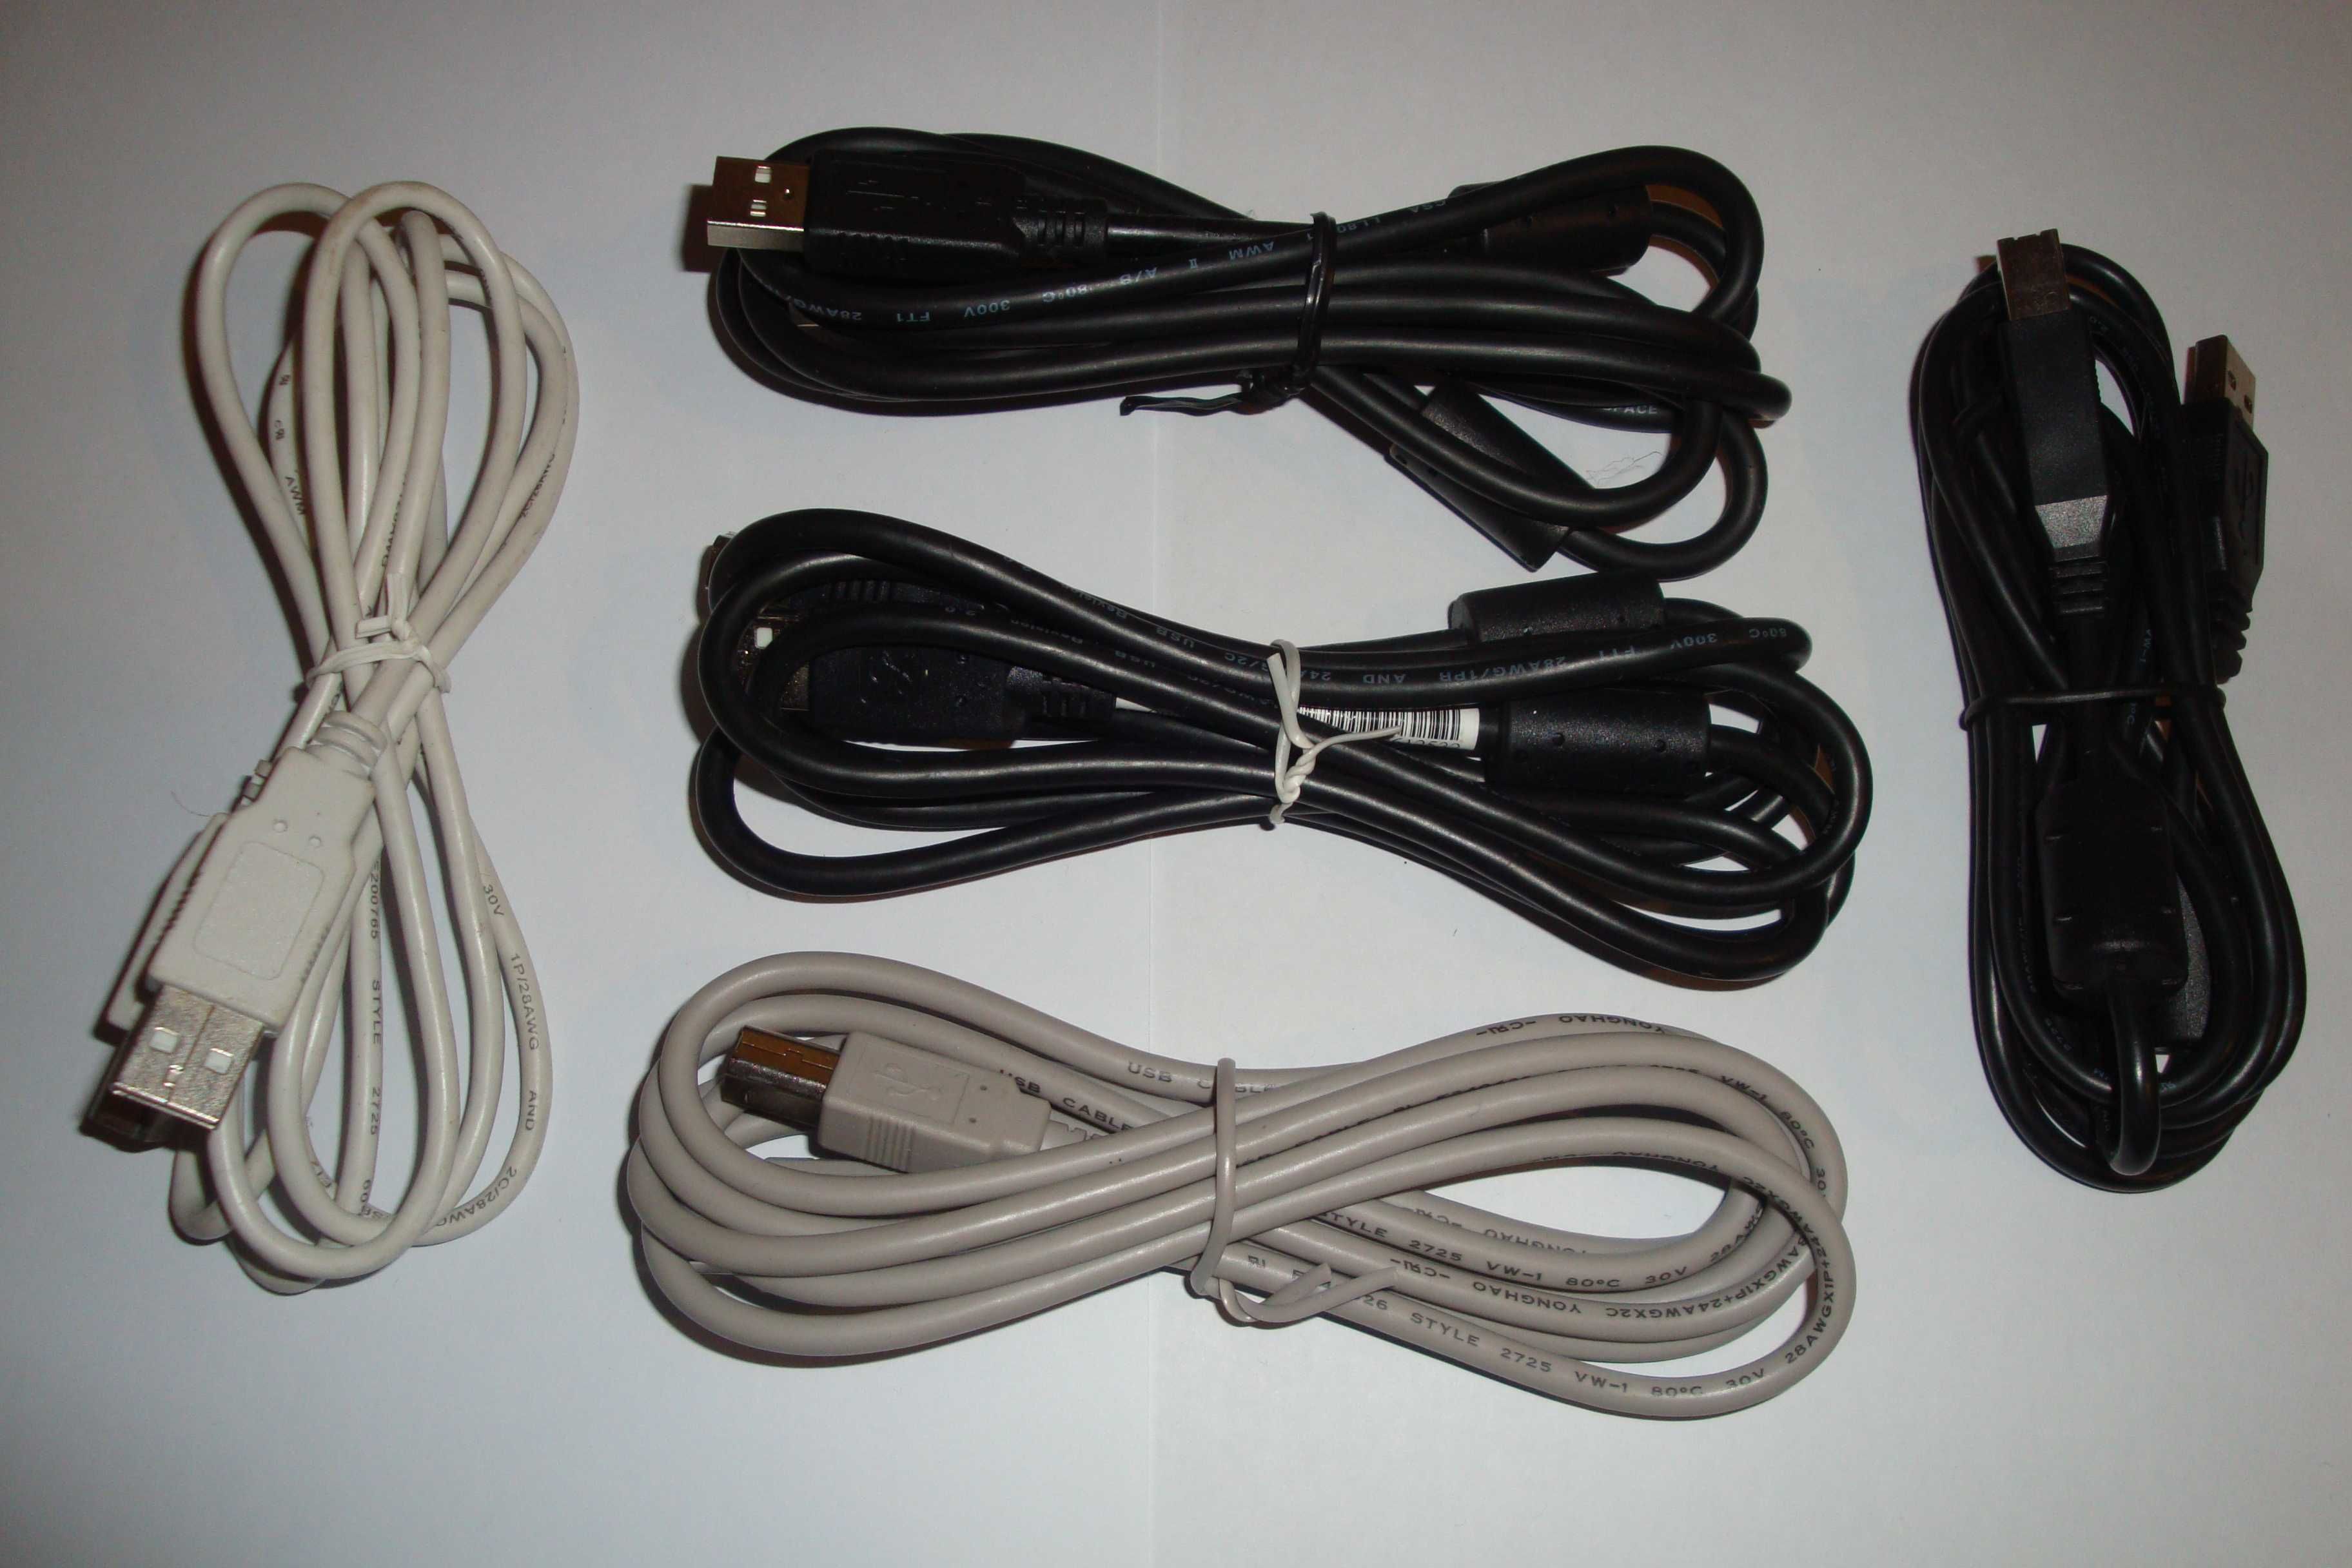 cablu imprimanta usb 2.0 lungime 1,5m - 2m